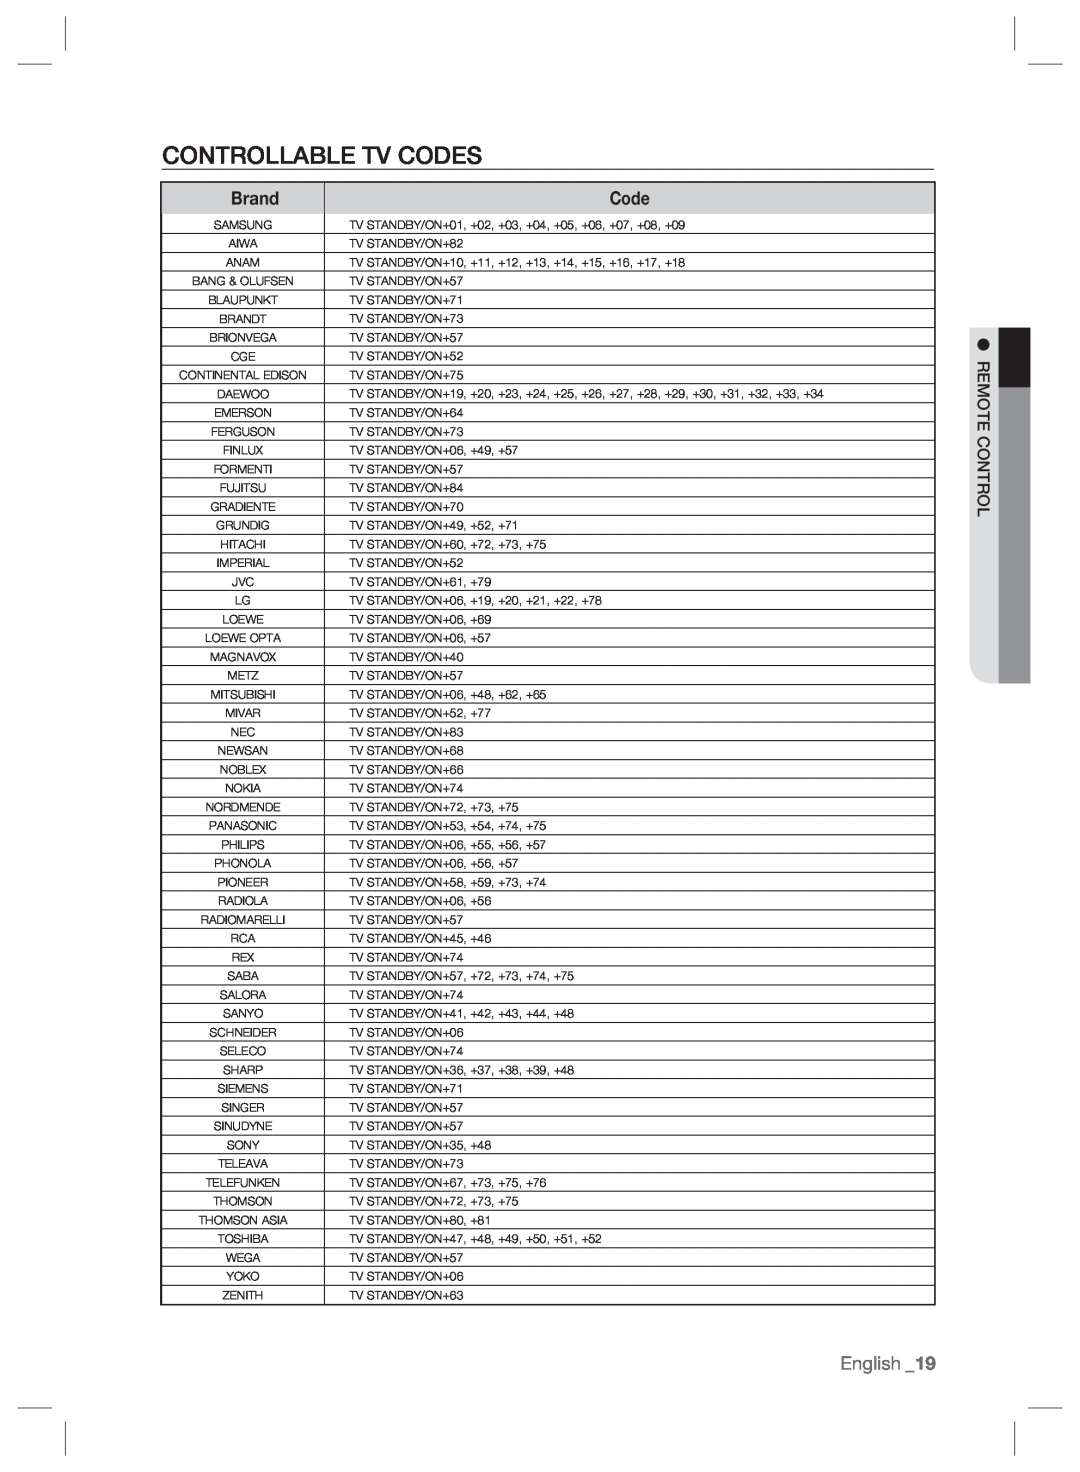 Samsung BD-P2500/XEF, BD-P2500/EDC, BD-P2500/XEE manual Controllable Tv Codes, Brand, English 